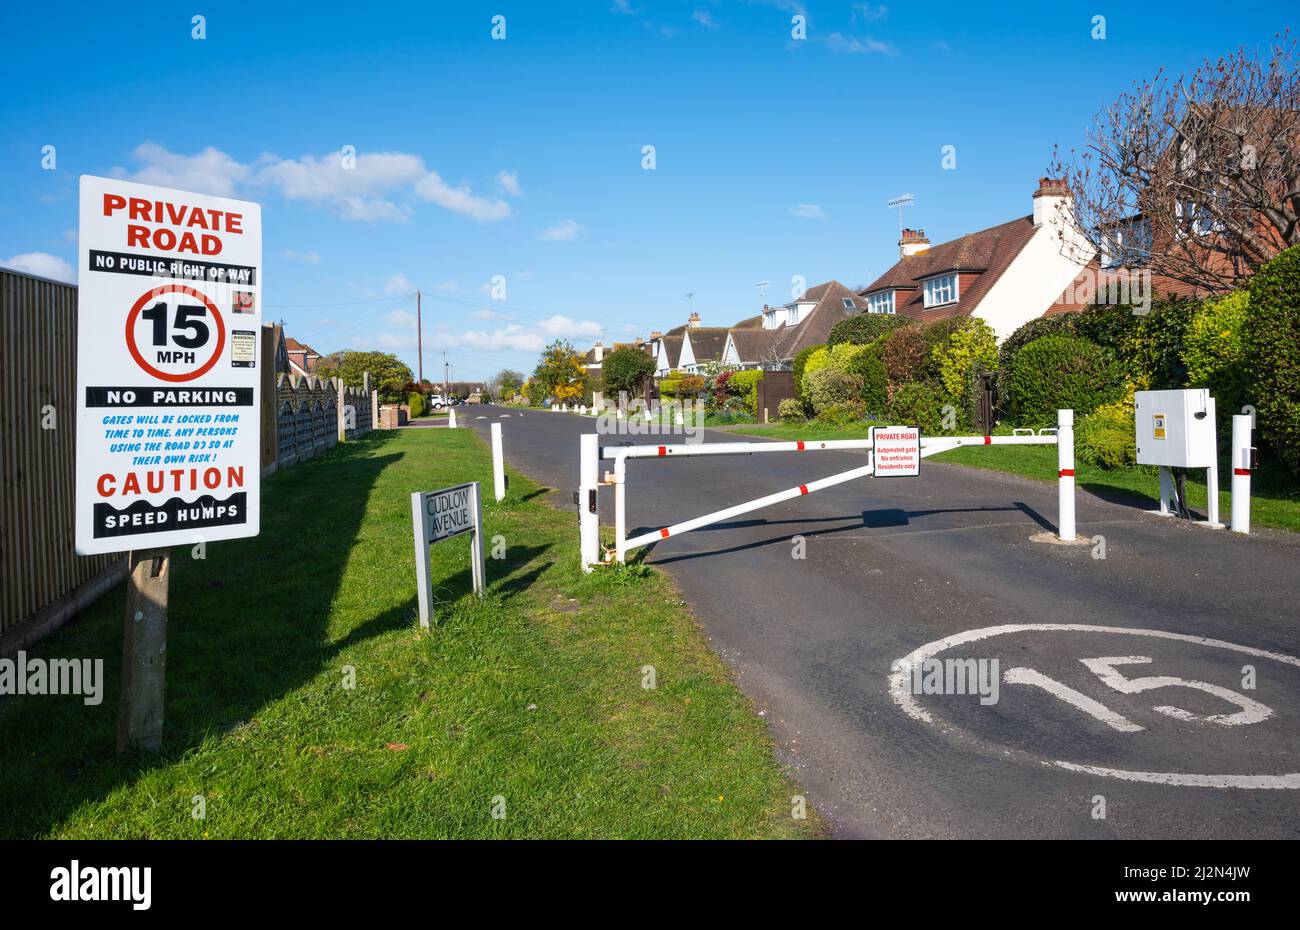 Entrée fermée avec porte fermée vers une route privée avec limite de vitesse de 15MPH à Cudlow Avenue, Rustington, West Sussex, Angleterre, Royaume-Uni. Banque D'Images